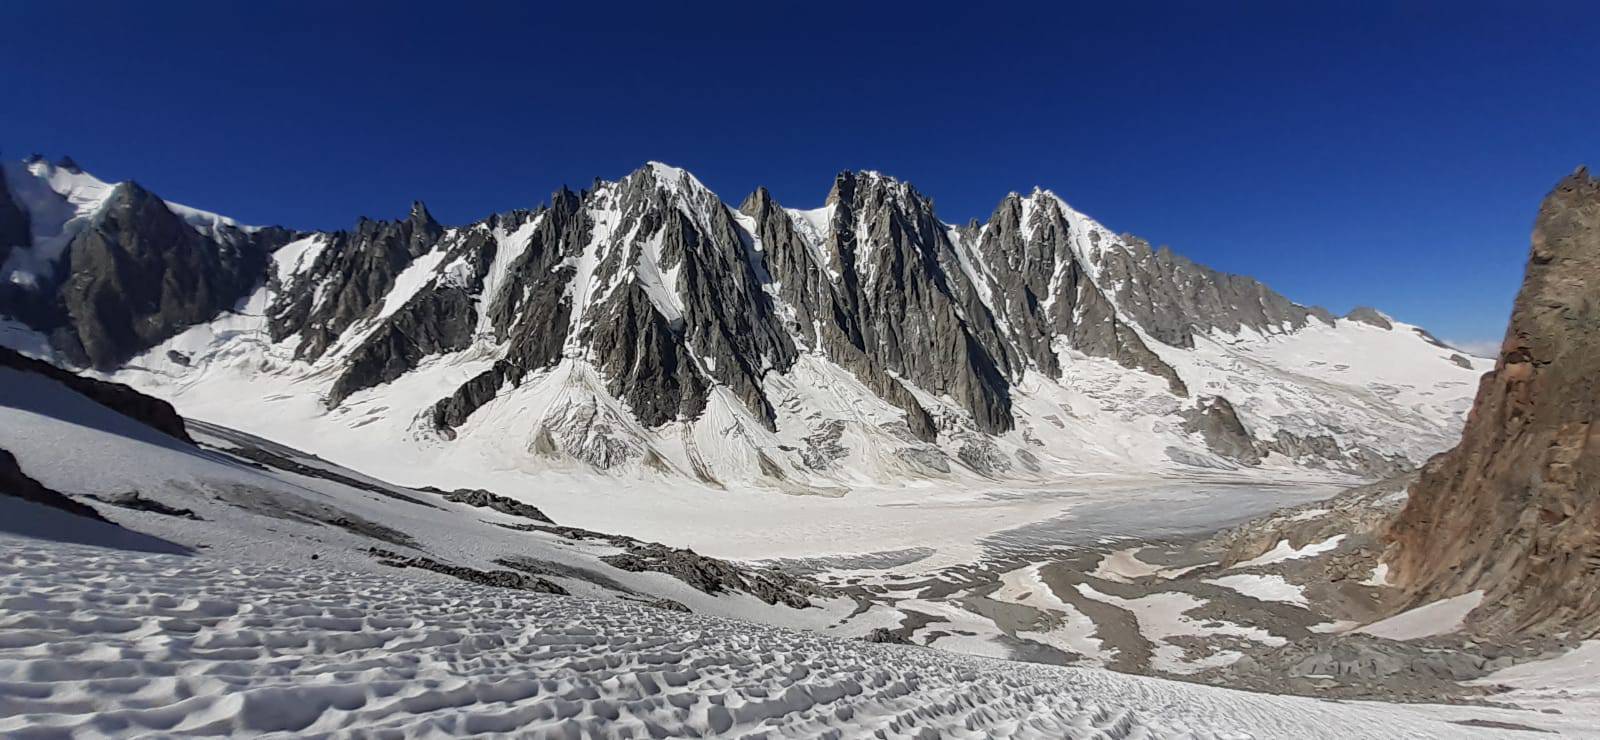 Photographie d'un glacier entouré de montagnes